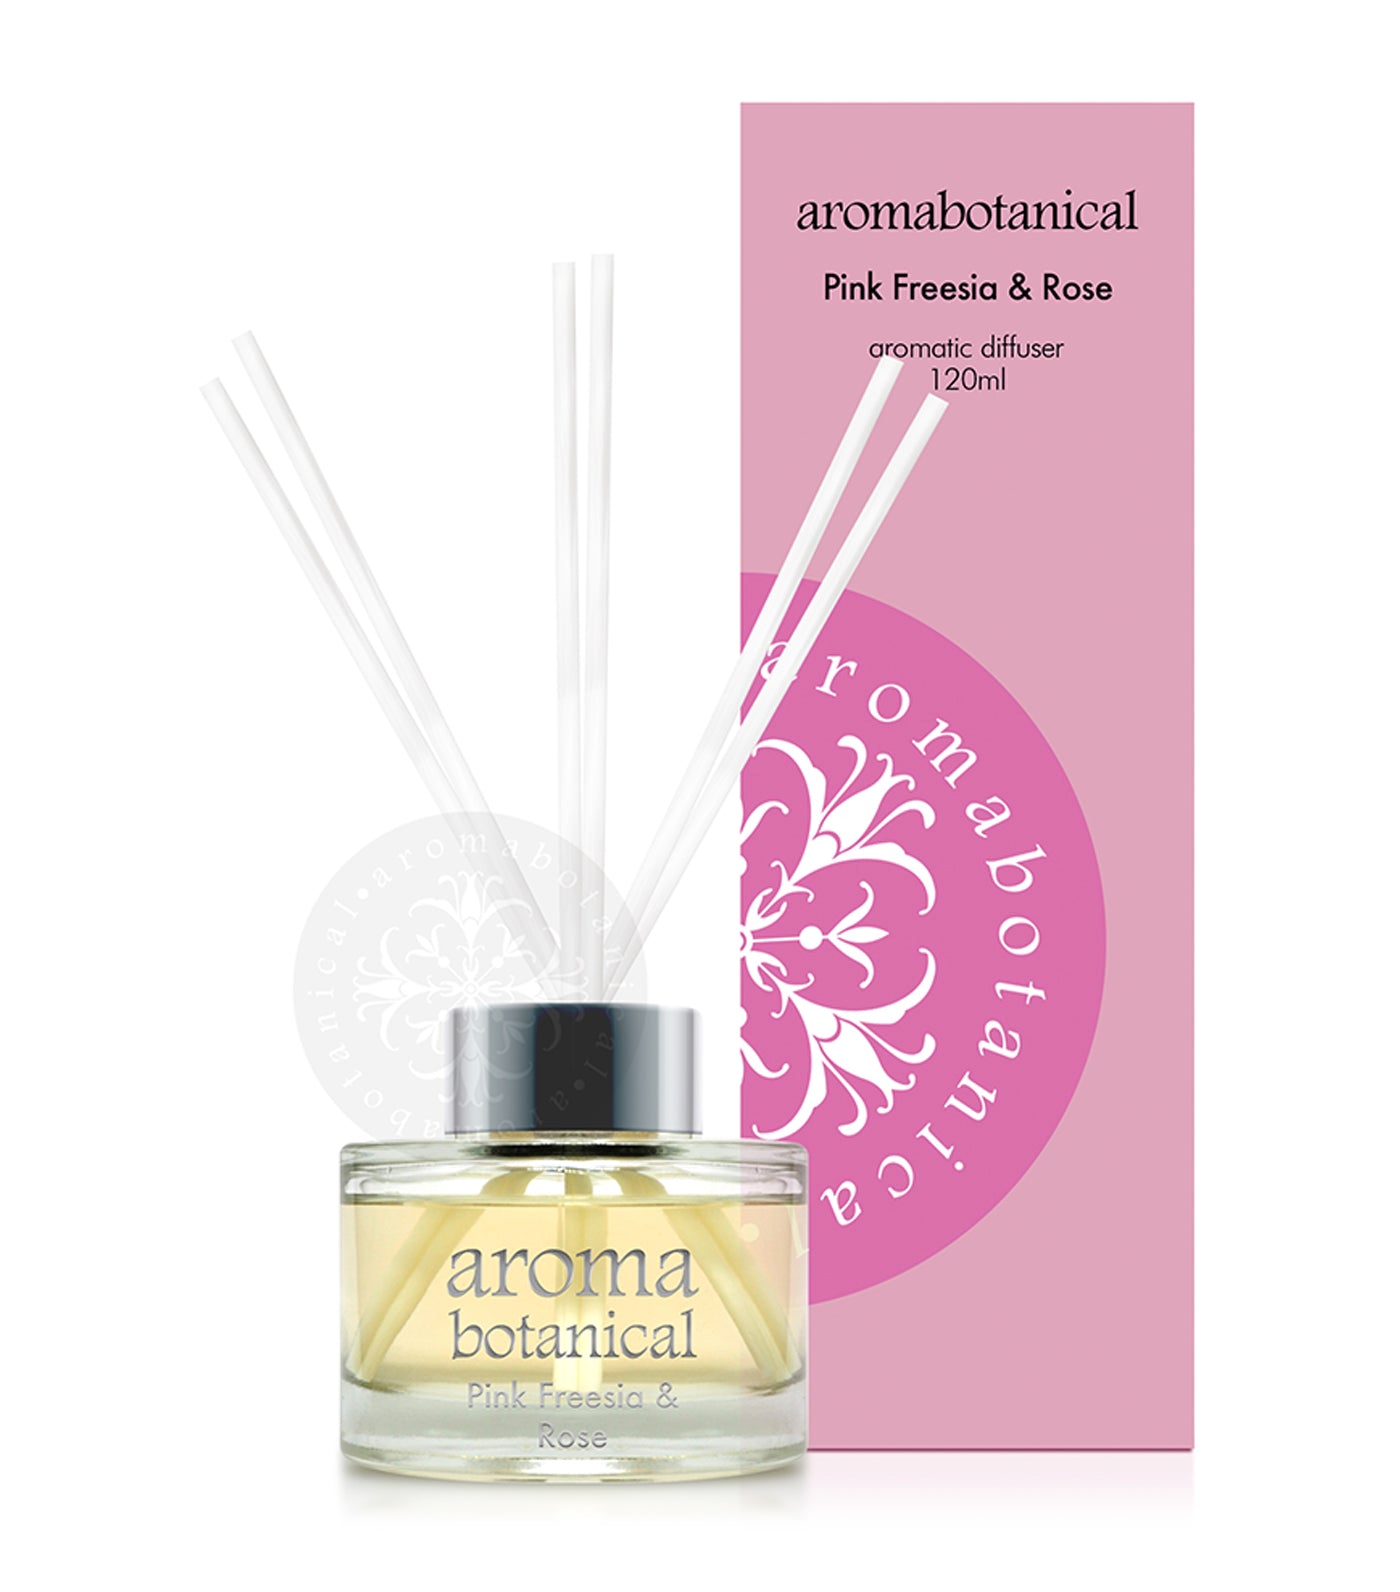 aromabotanical pink freesia & rose 120ml reed diffuser